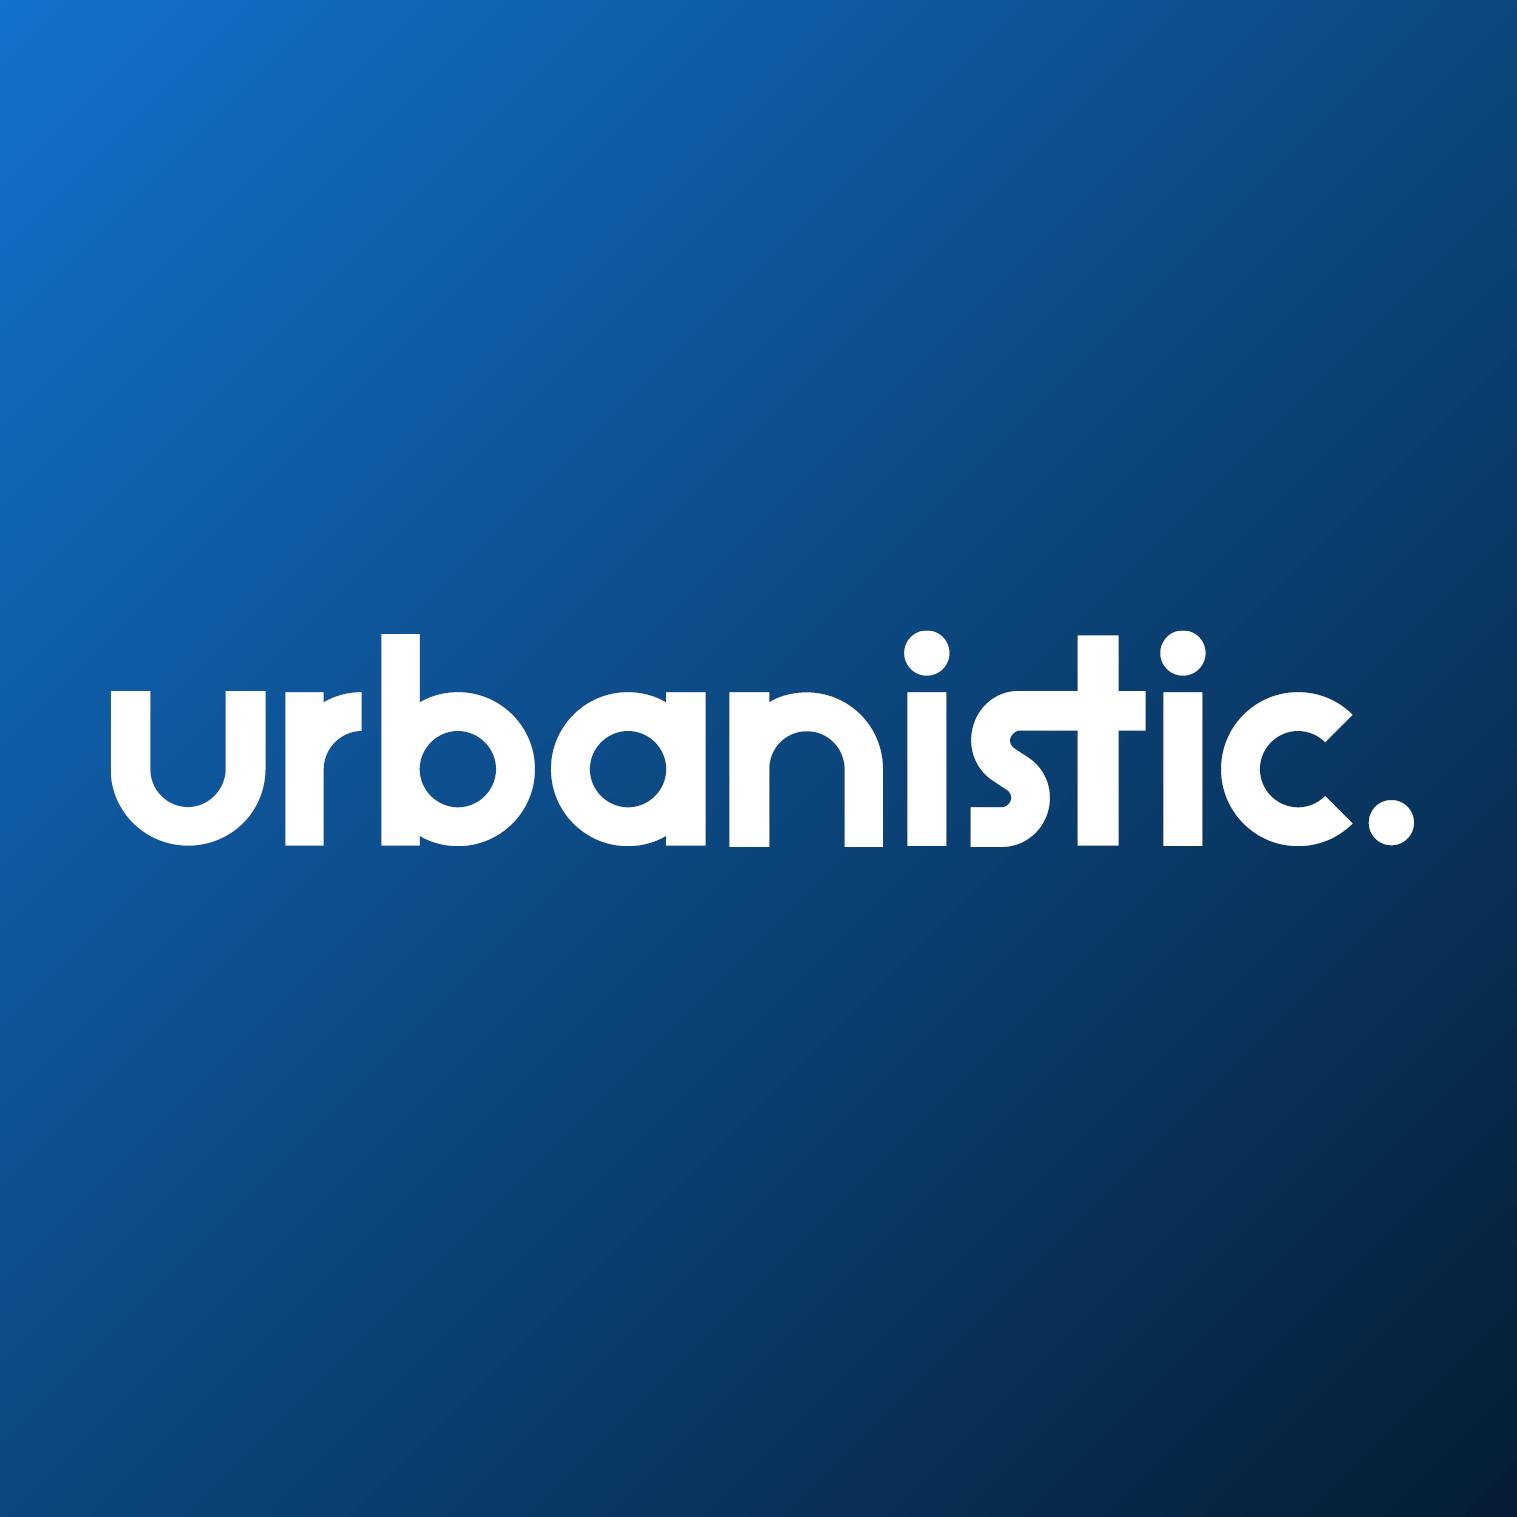 Urbanistic